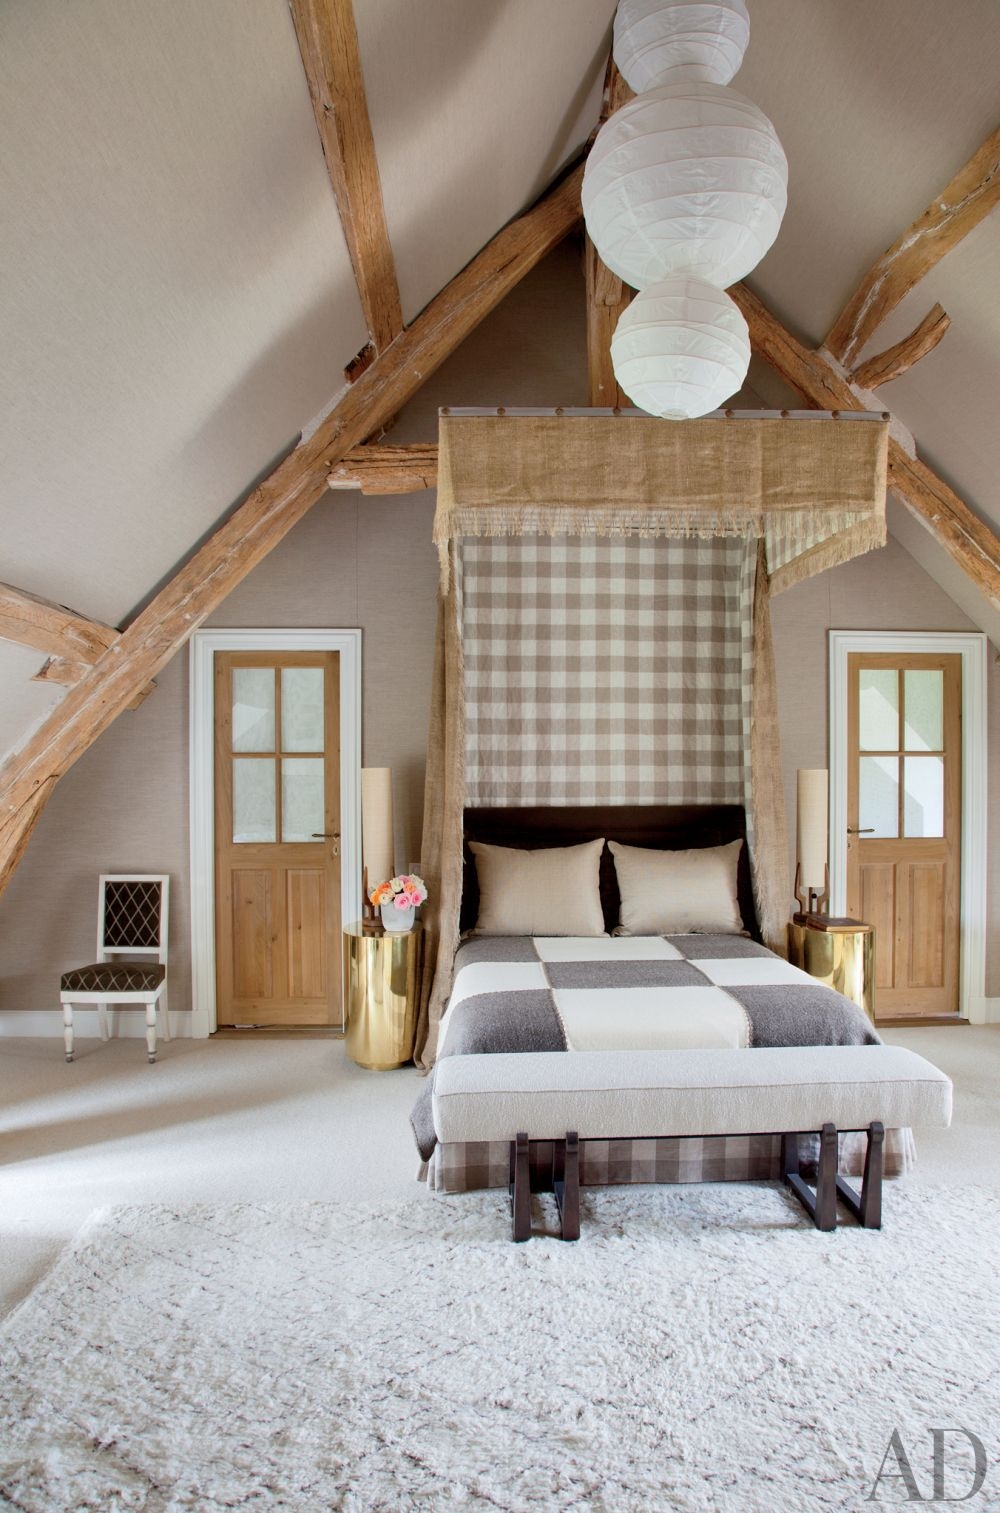 rustic-bedroom-jean-louis-deniot-loire-valley-france-201305-3_1000-watermarked.jpg